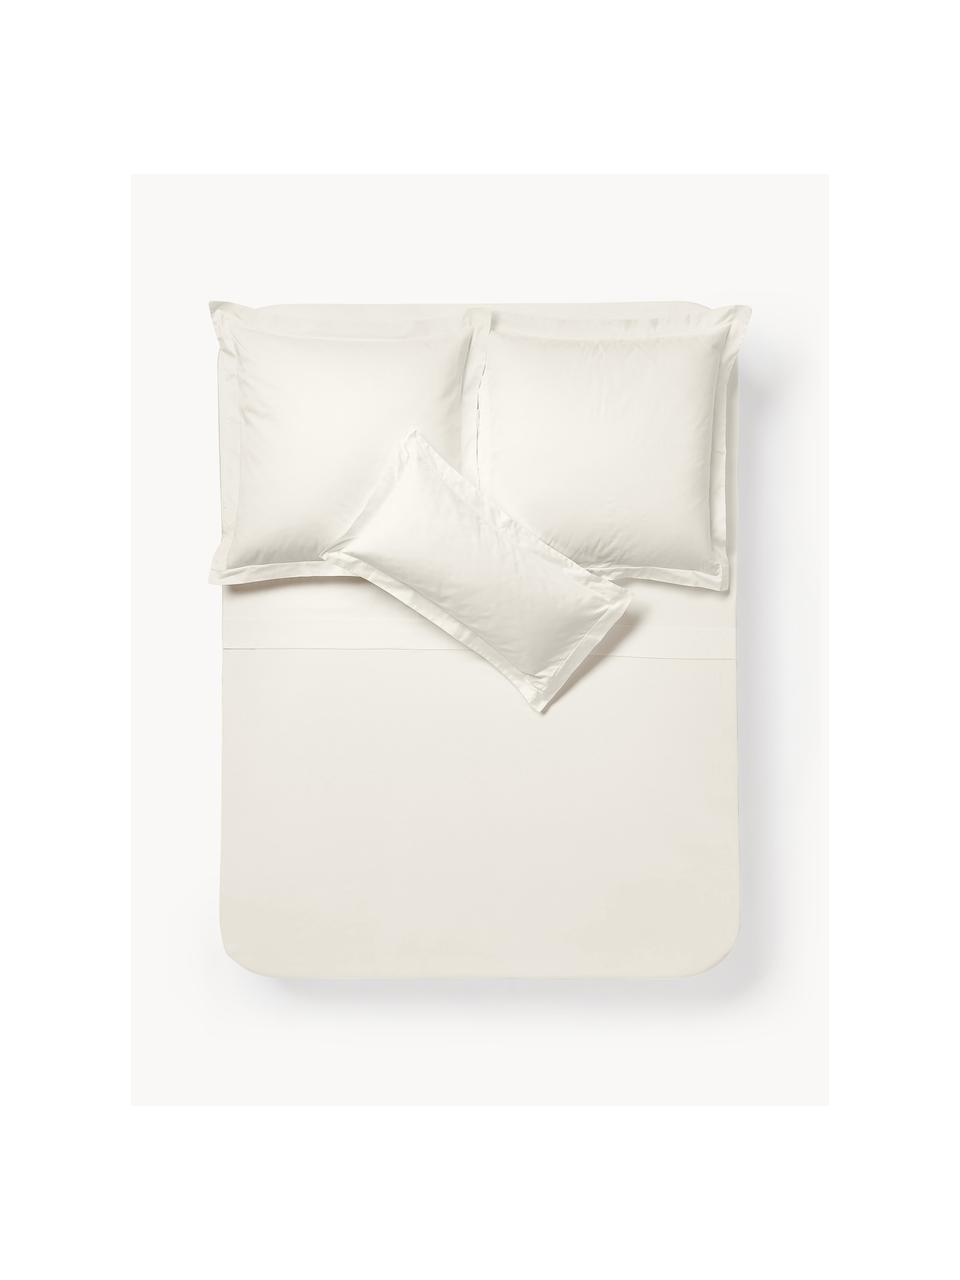 Lenzuola in raso di cotone Premium, Bianco crema, Larg. 180 x Lung. 280 cm